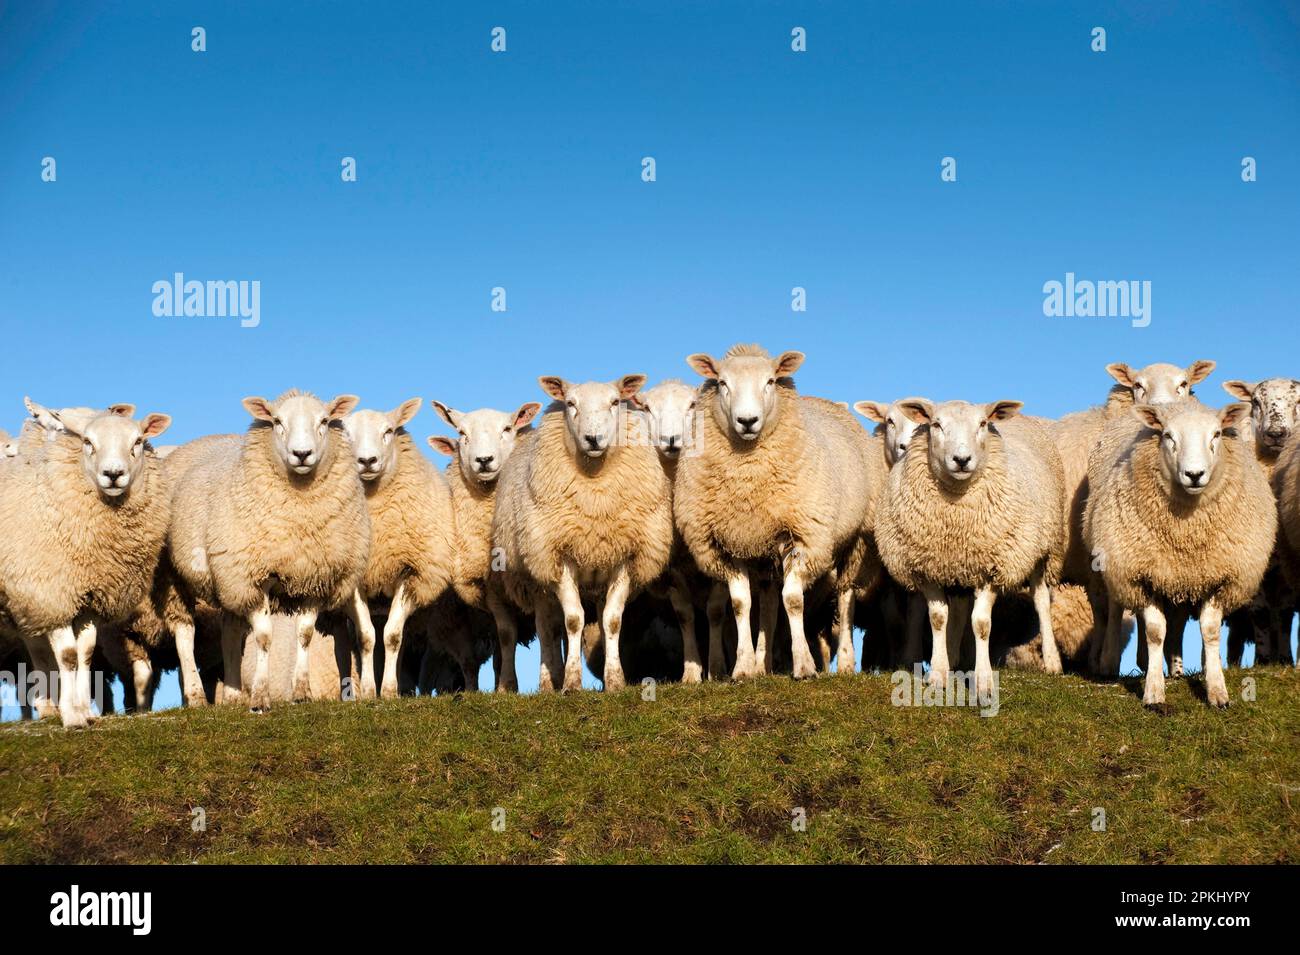 Moutons domestiques, Beltex, troupeau debout à flanc de colline, Angleterre, Royaume-Uni Banque D'Images